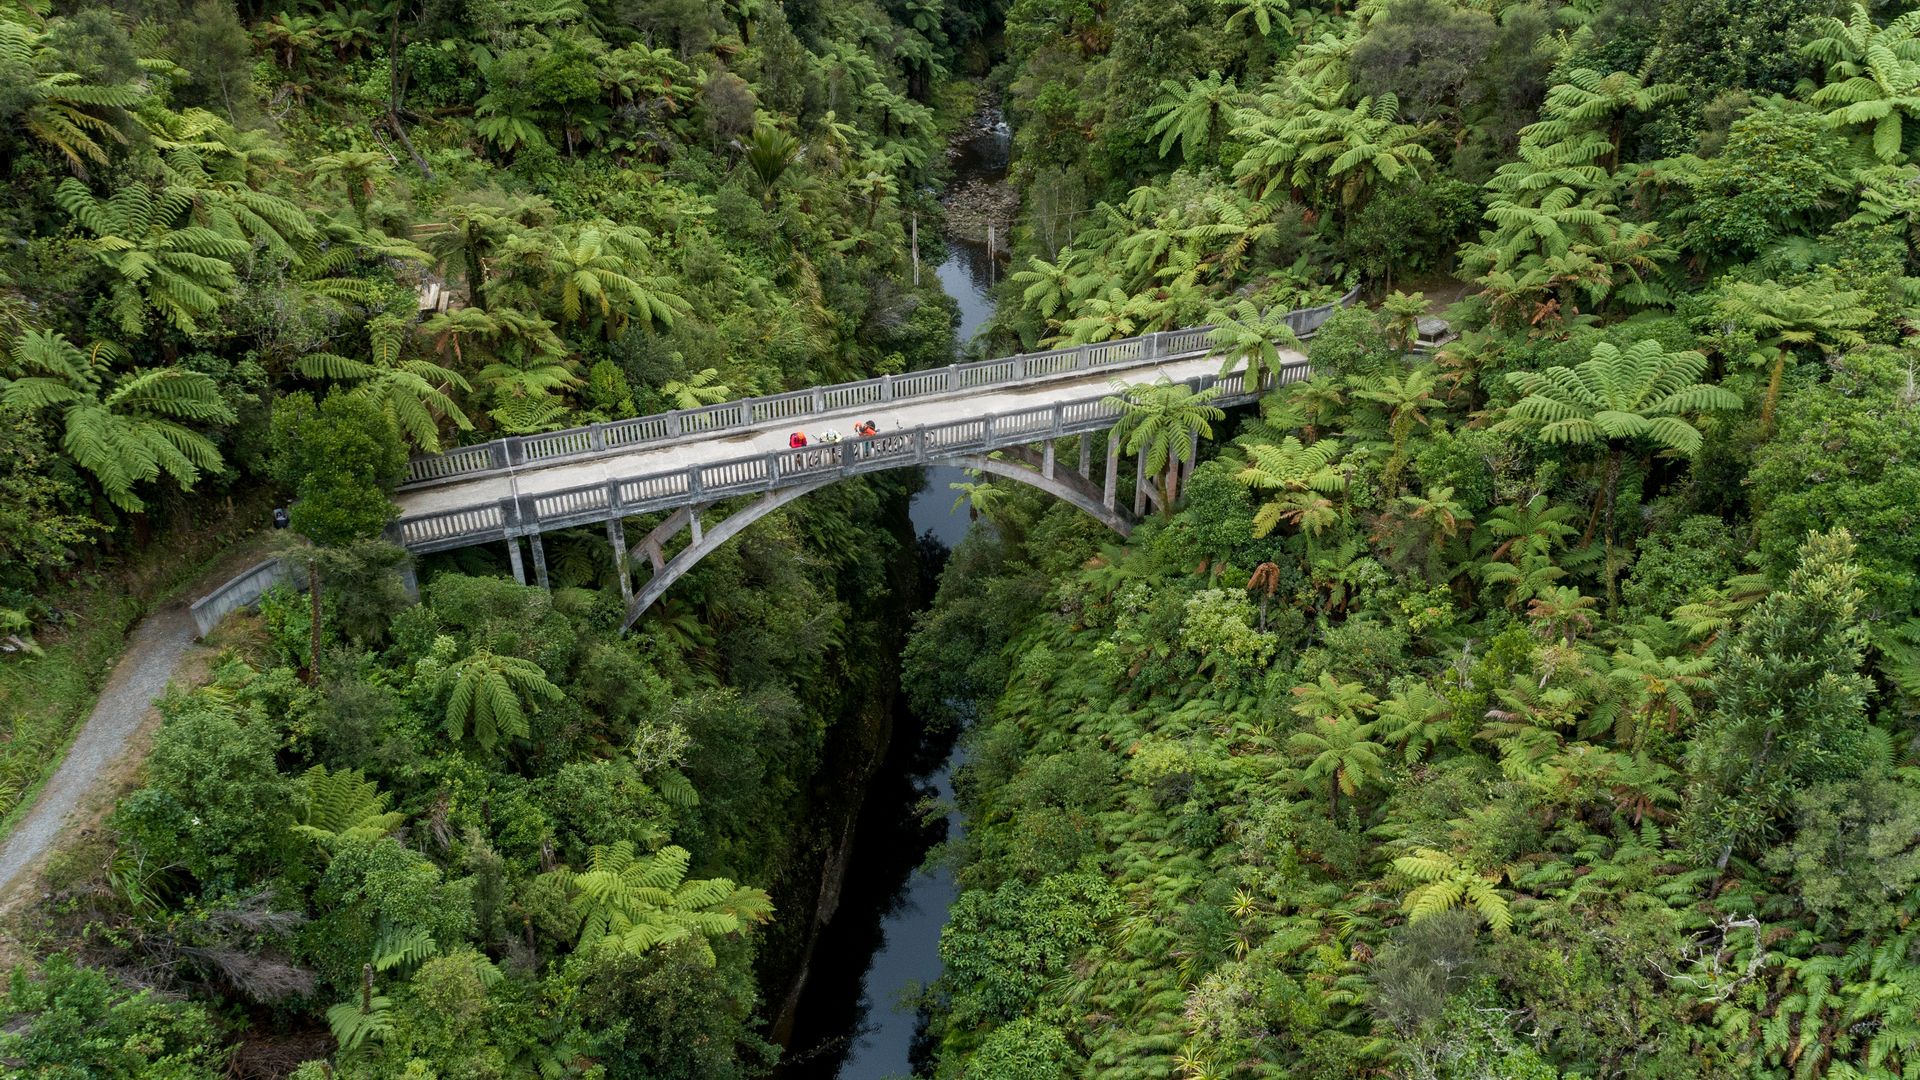 Whanganui River Jet Boat and Bridge To Nowhere - Visit Ruapehu (2).jpg